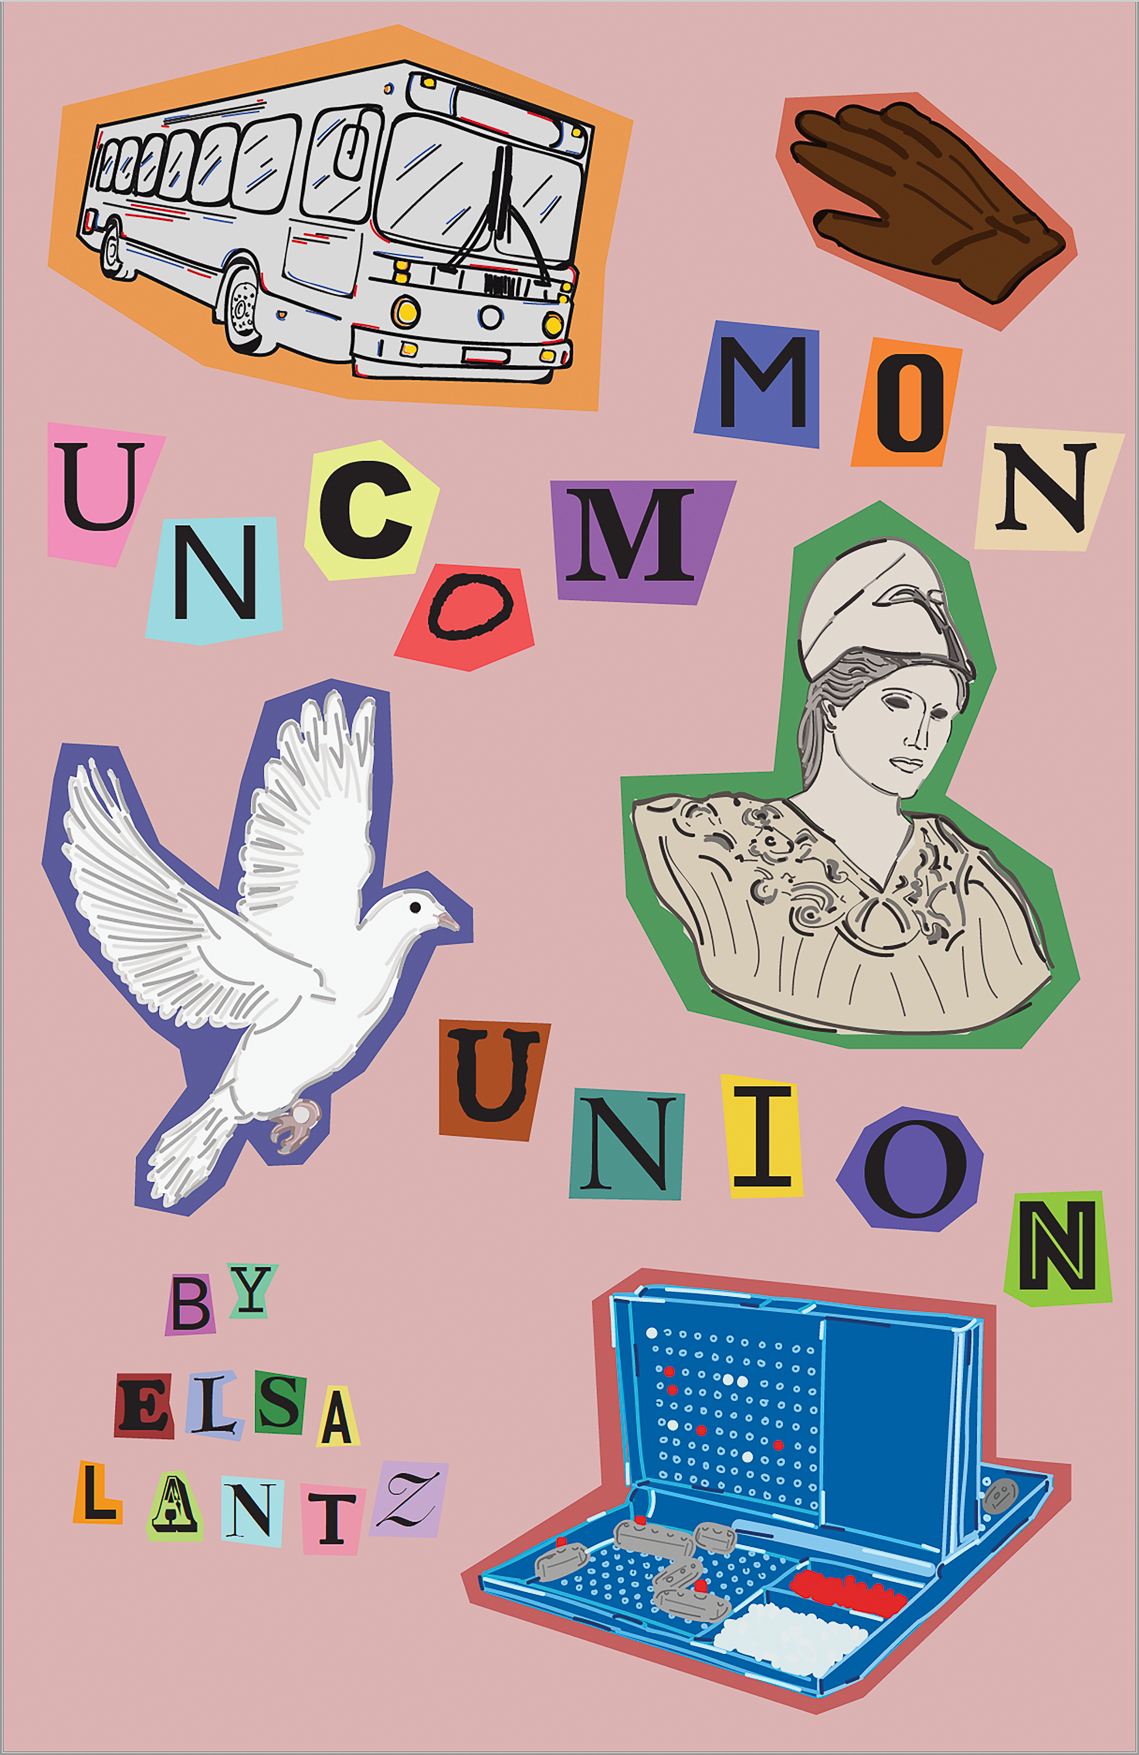 Book cover for Elsa Lantz's chapbook entitled "Uncommon Union"